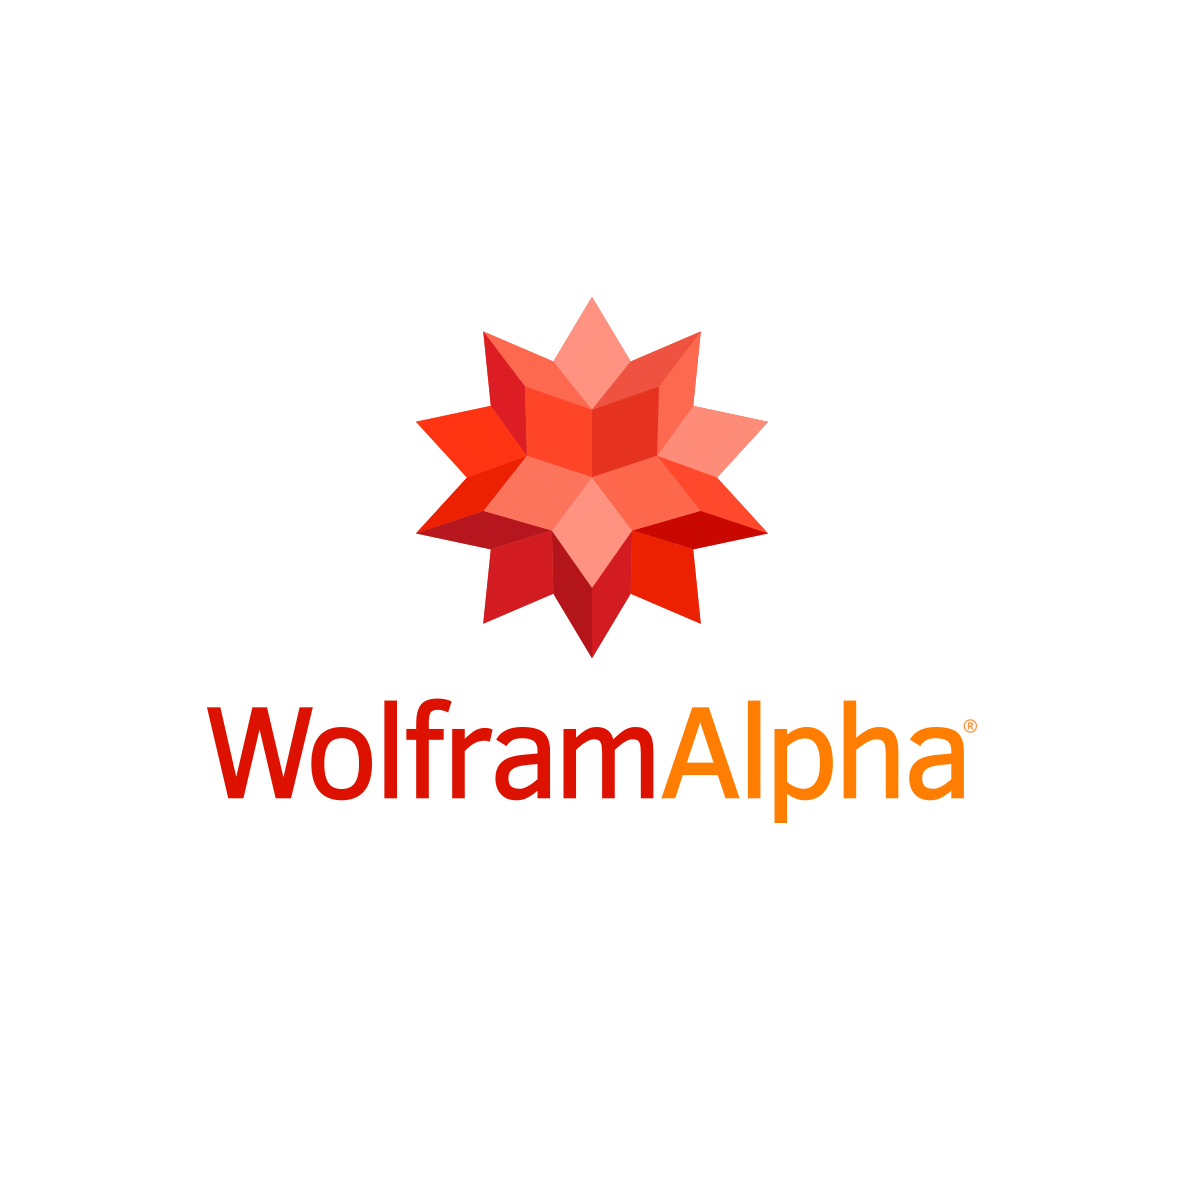 볼프람(Wolfram)